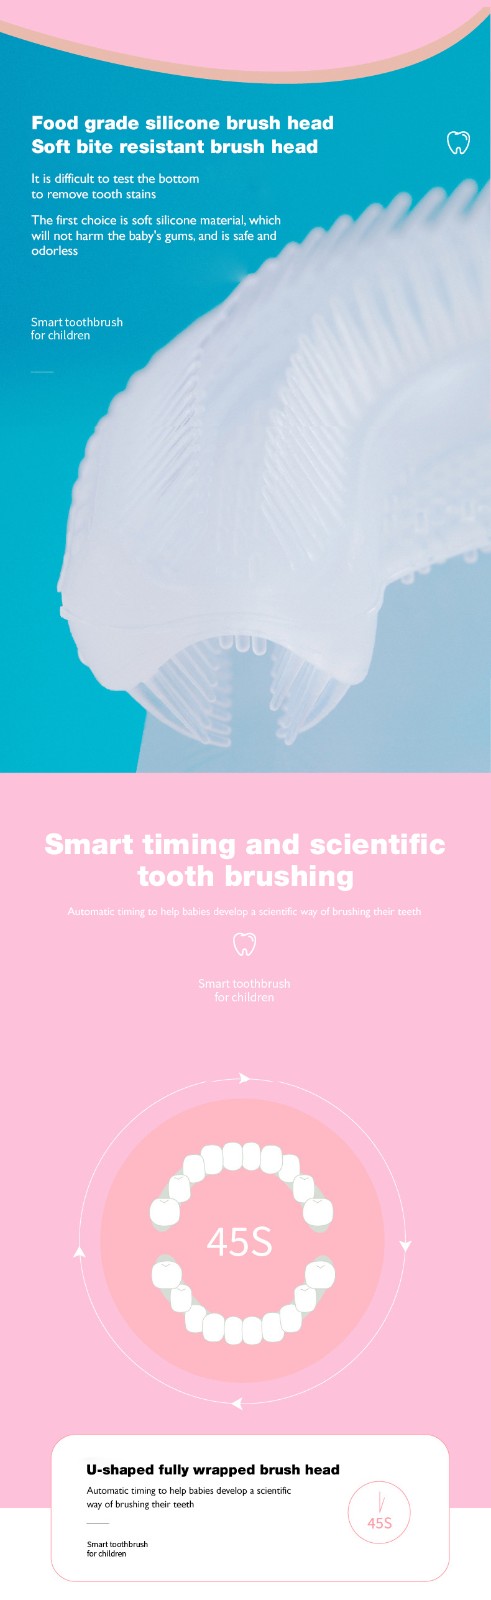 GlorySmile best smart toothbrush Supply for teeth-2